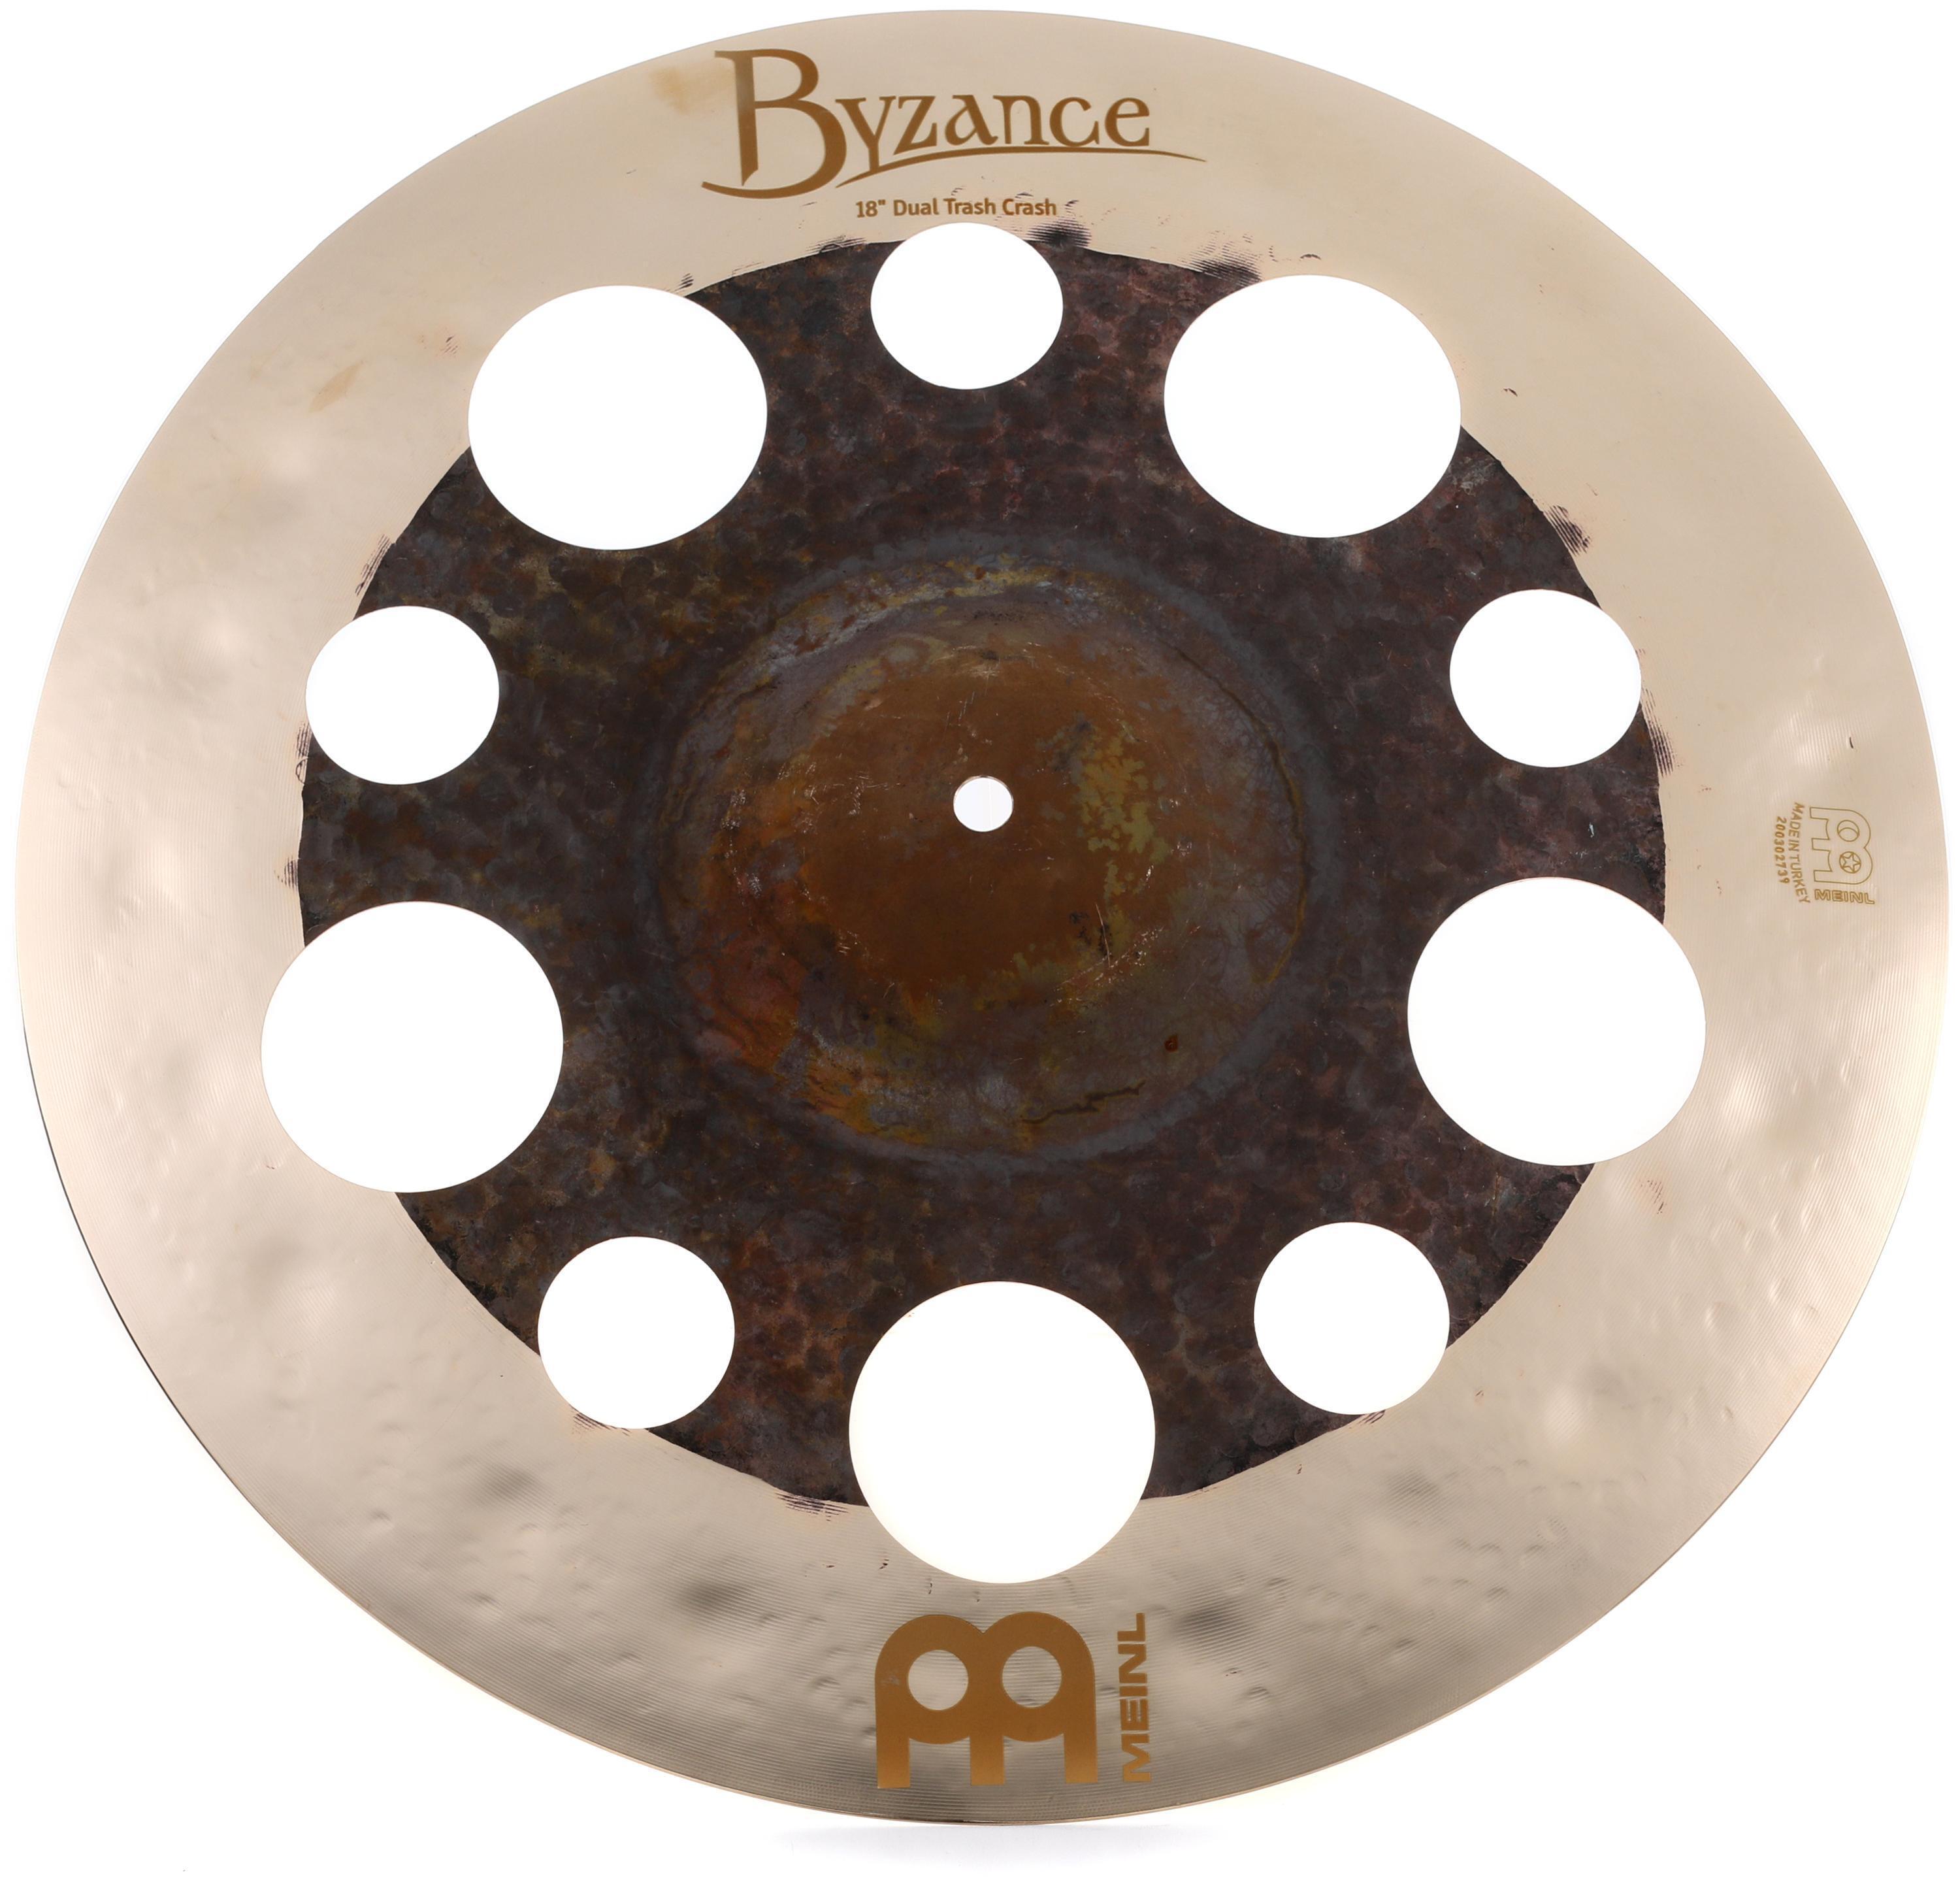 Meinl Cymbals 18 inch Byzance Dual Trash Crash Cymbal